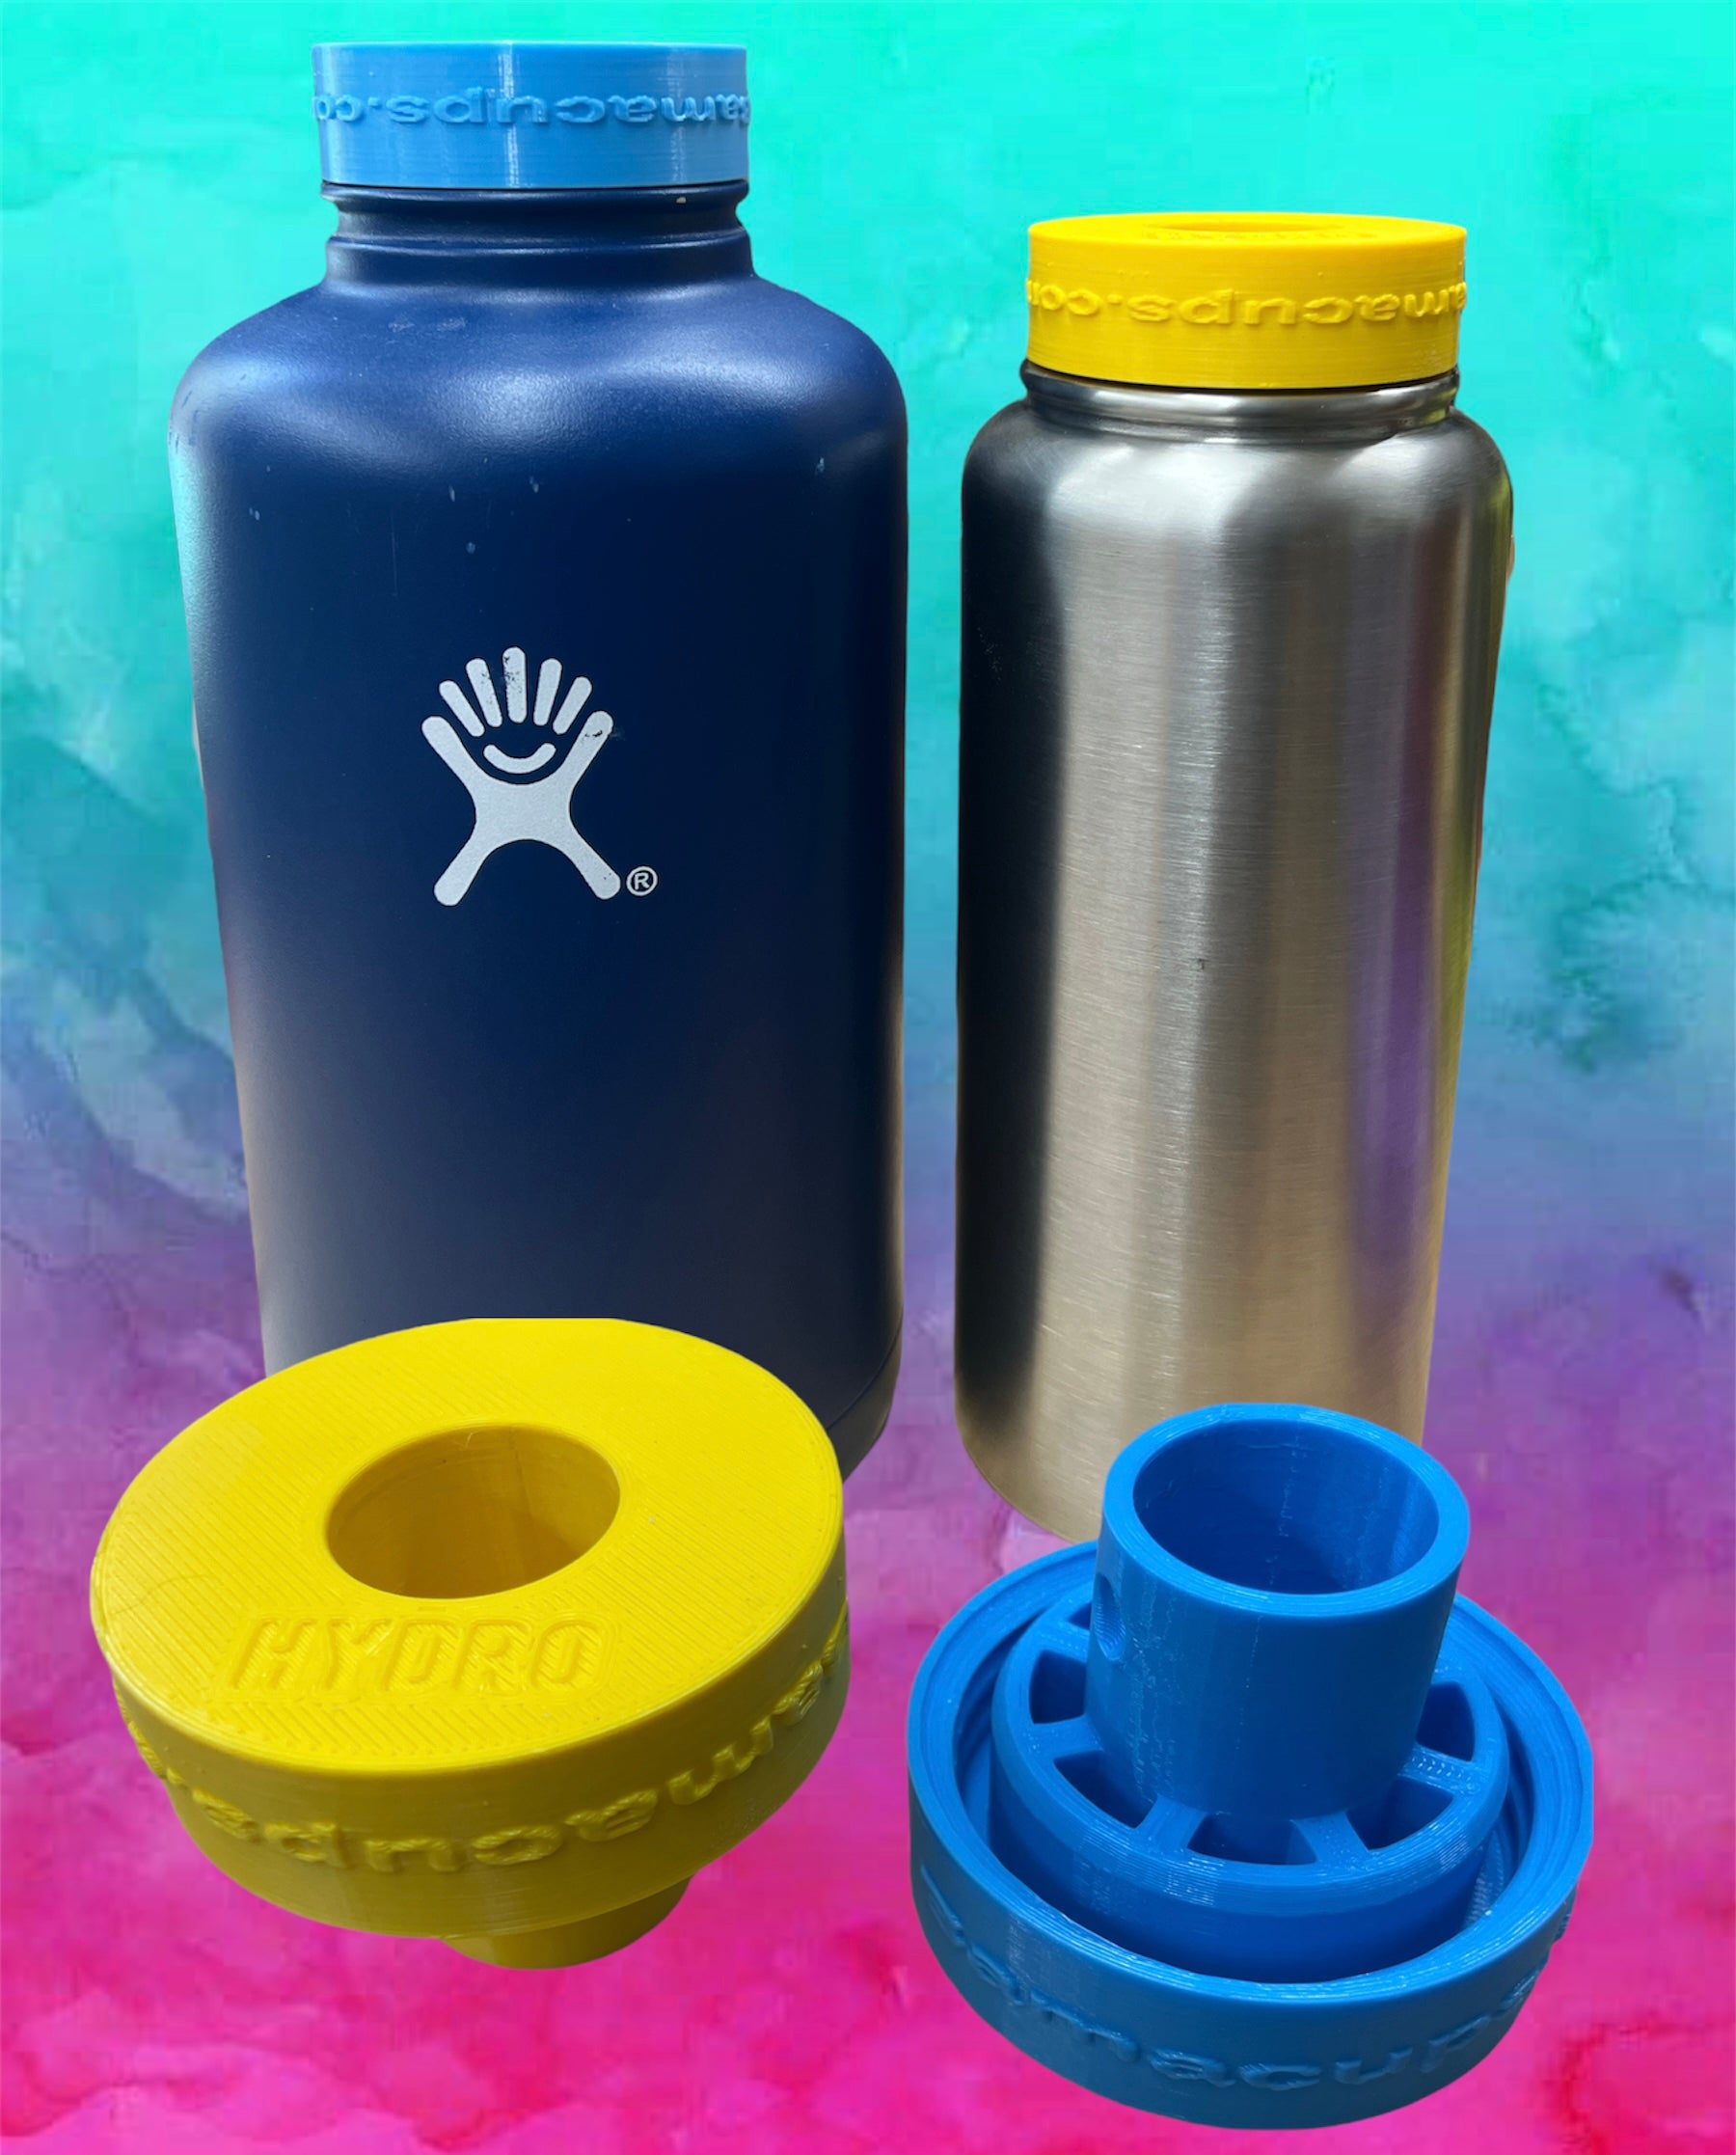 Hydro Flask Water Bottle 40 Oz 3D model